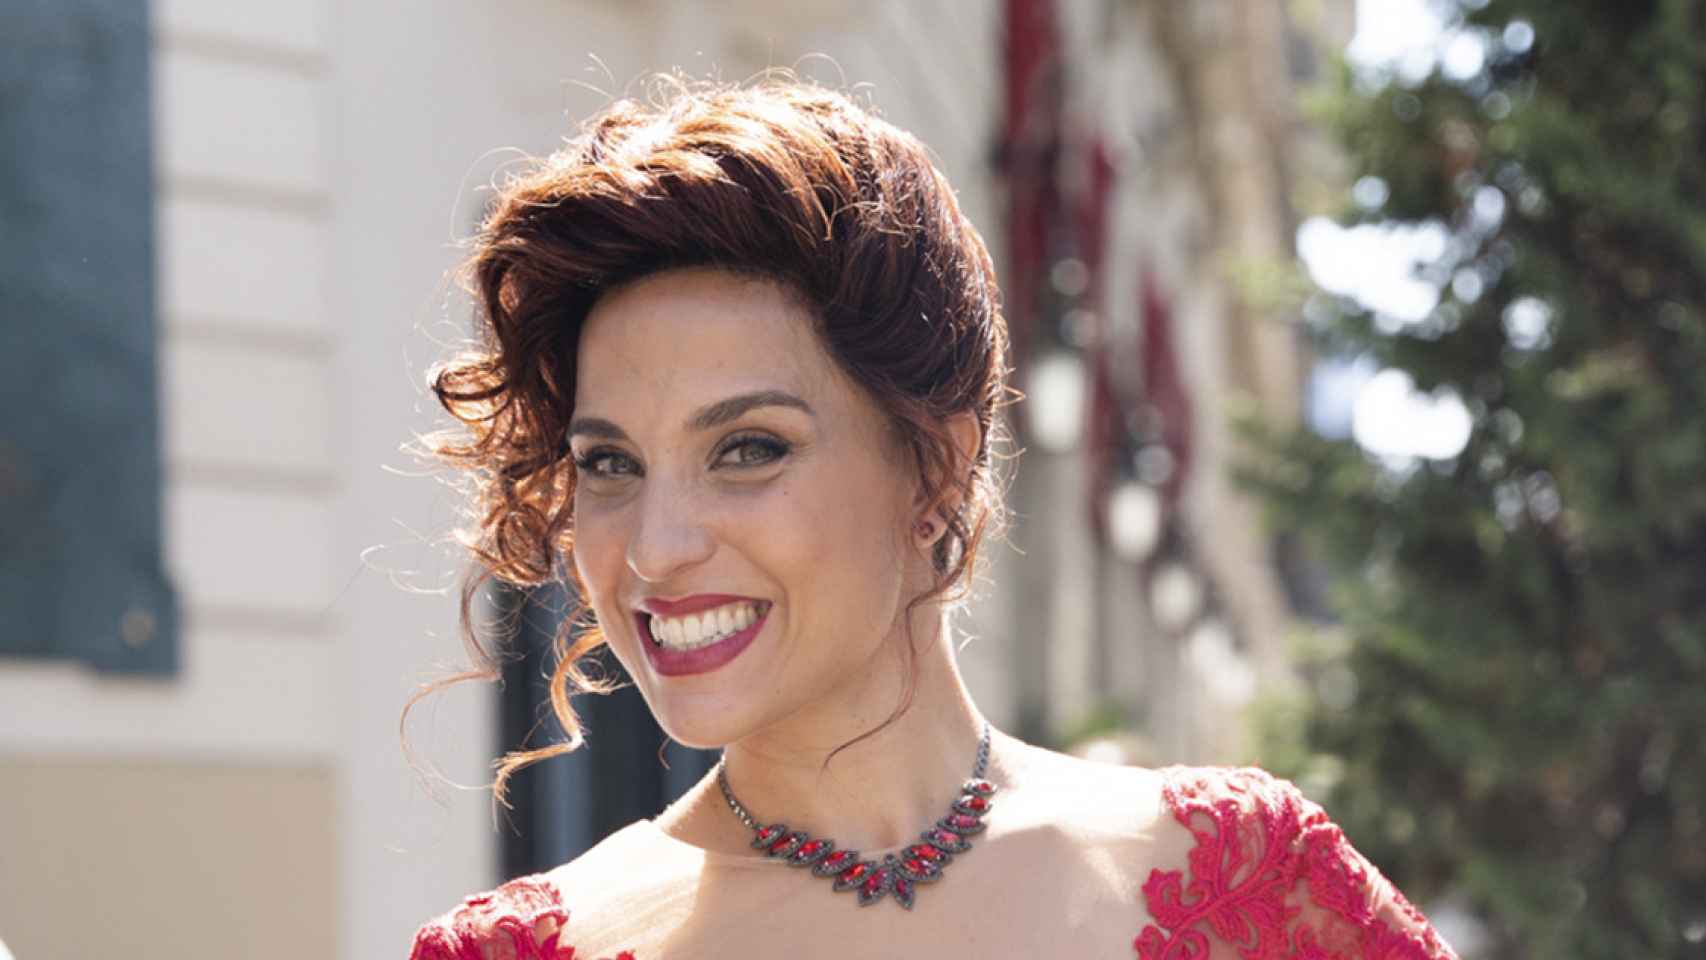 Cristina Llorente en la presentación de 'Pretty Woman' en el Hotel Palace de Barcelona / LUIS MIGUEL AÑÓN (CG)